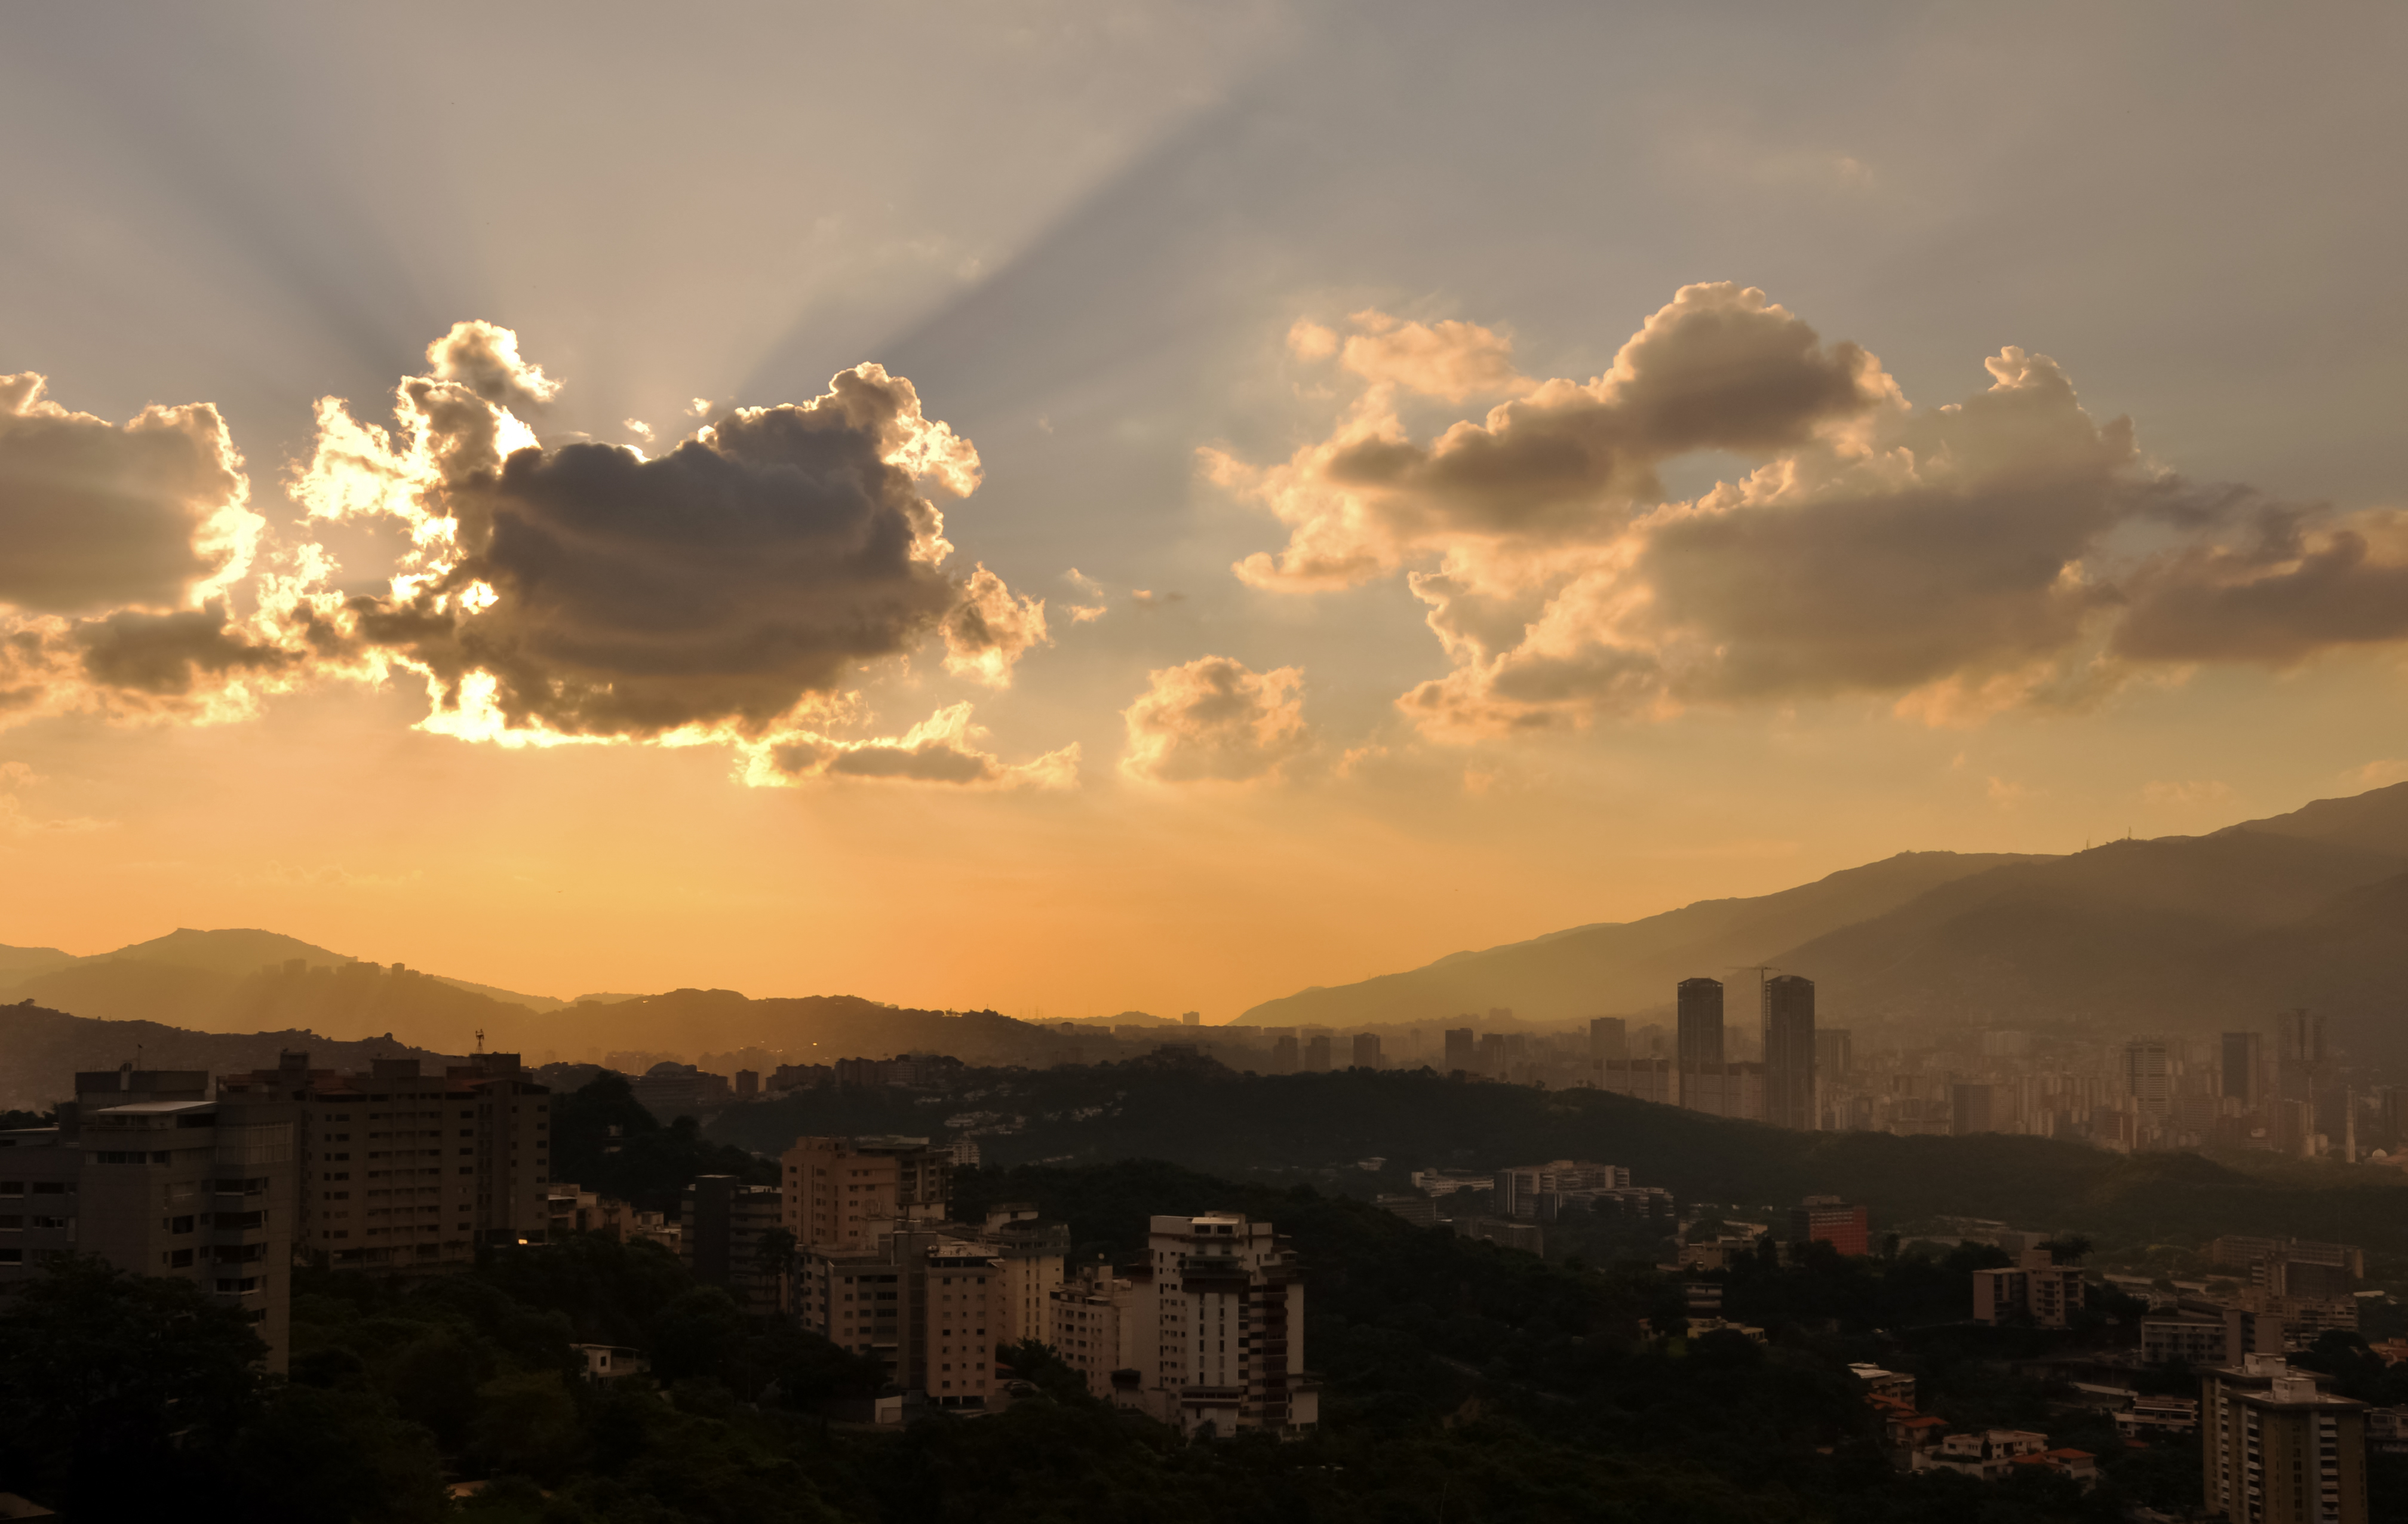 Caracas City from Bello Monte